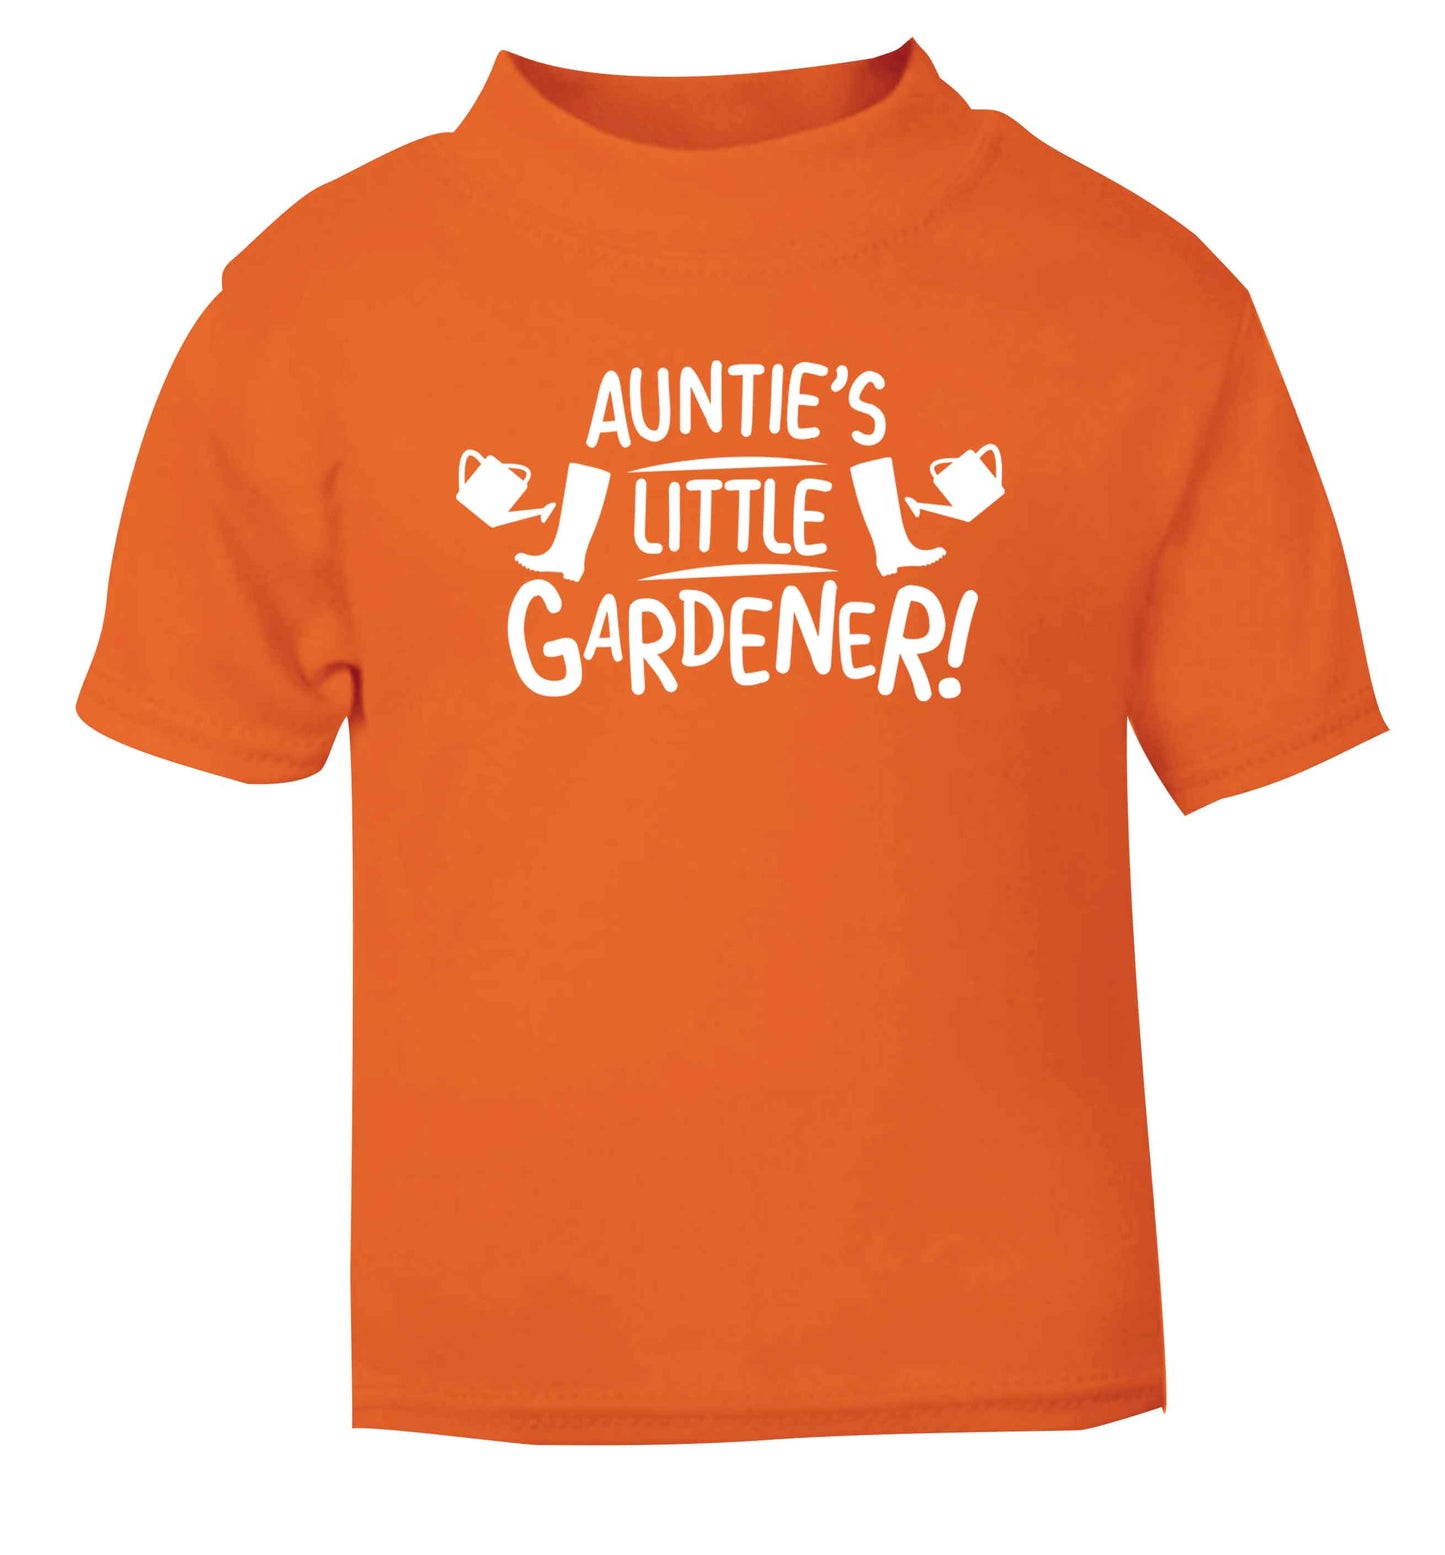 Auntie's little gardener orange Baby Toddler Tshirt 2 Years